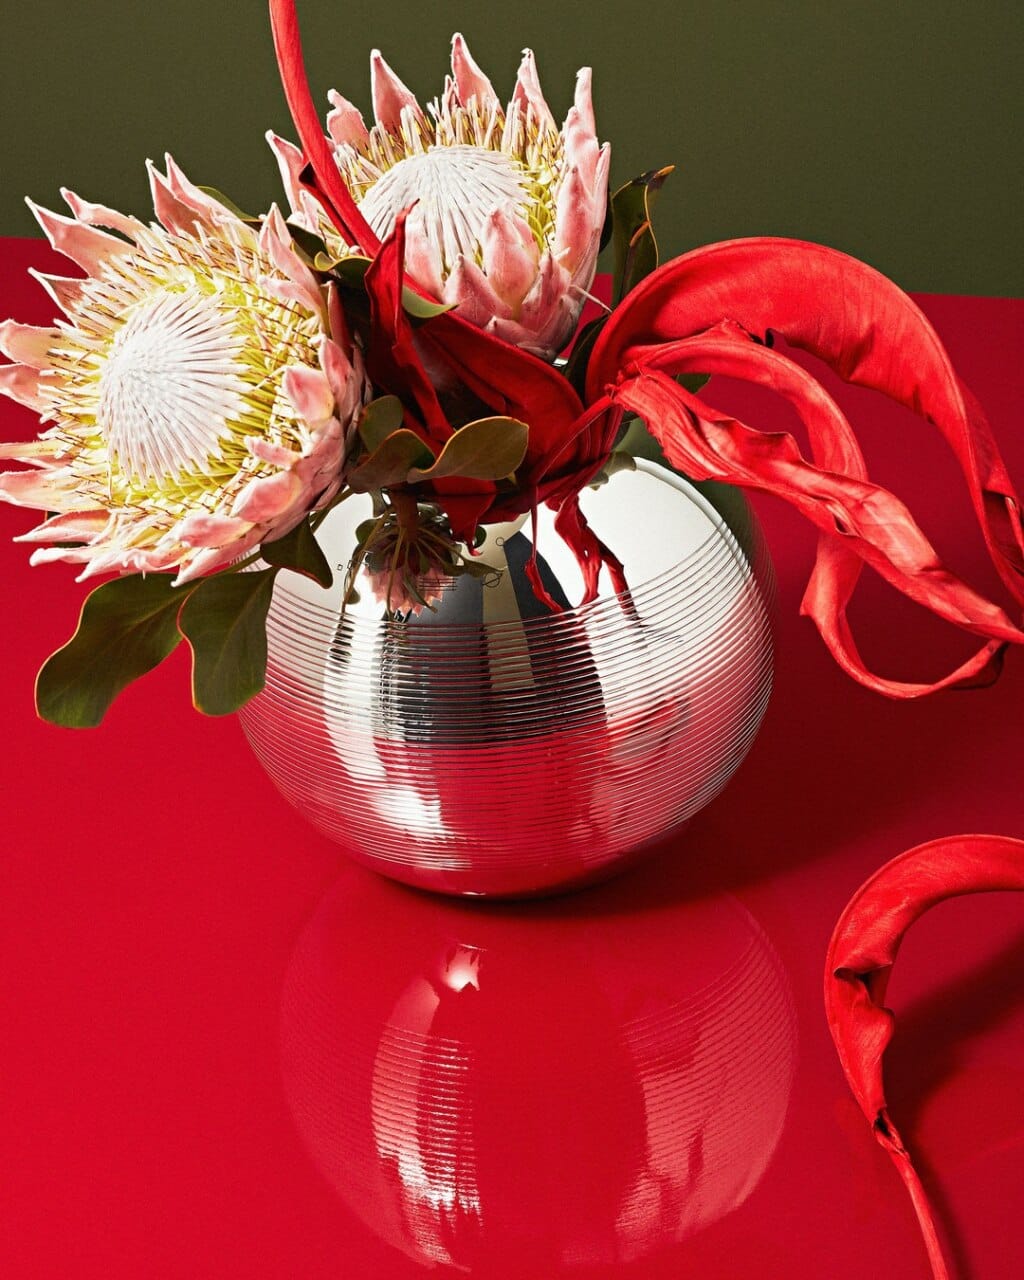 Vases en métal argenté fleuri de la collection Pétanque de Puiforcat mis en scène sur une table rouge, sur un fond kaki